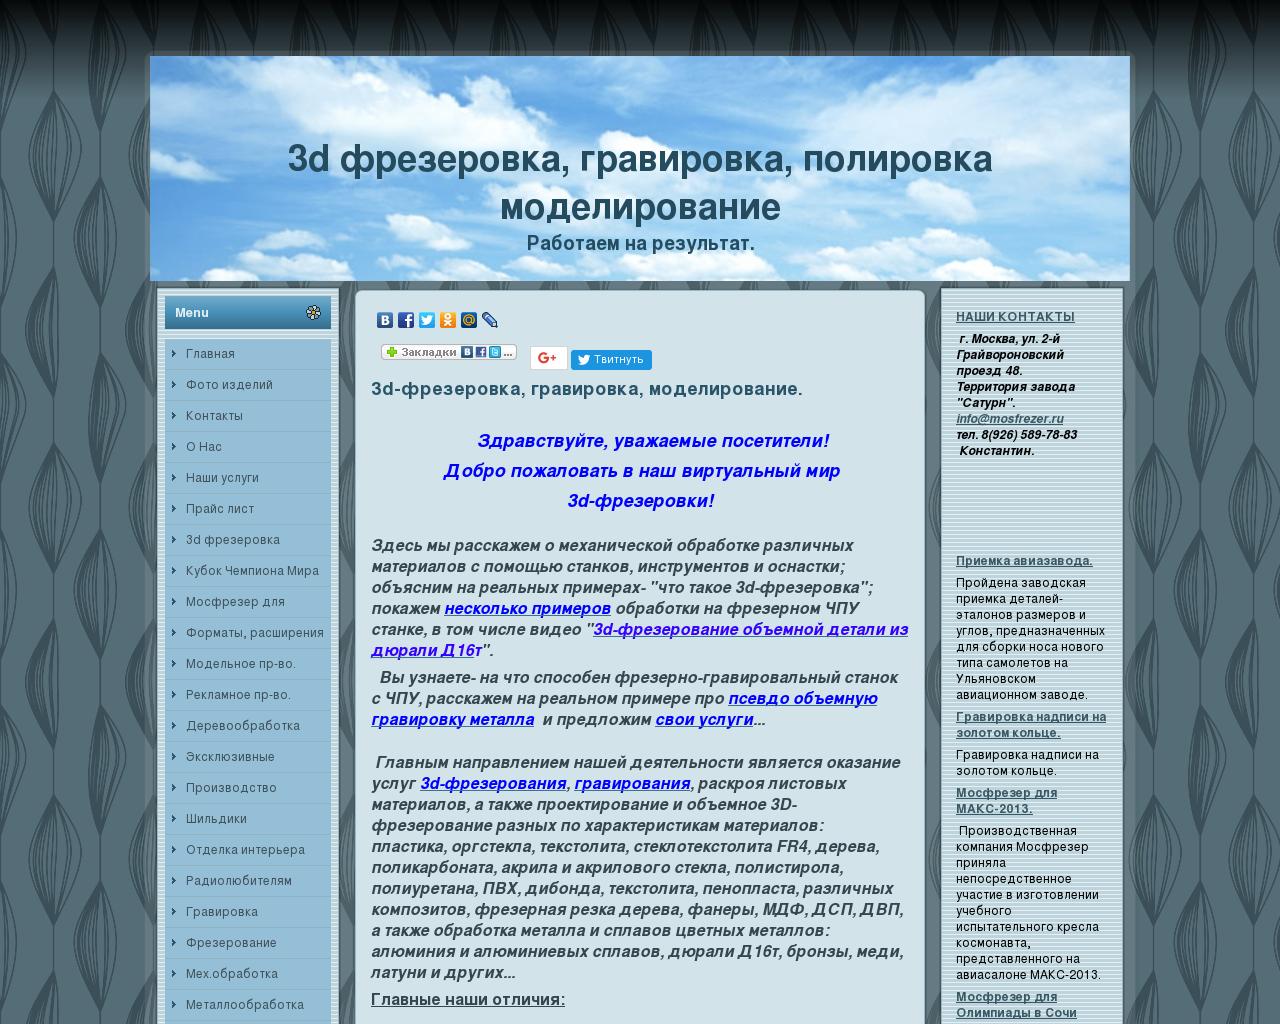 Изображение сайта mosfrezer.ru в разрешении 1280x1024